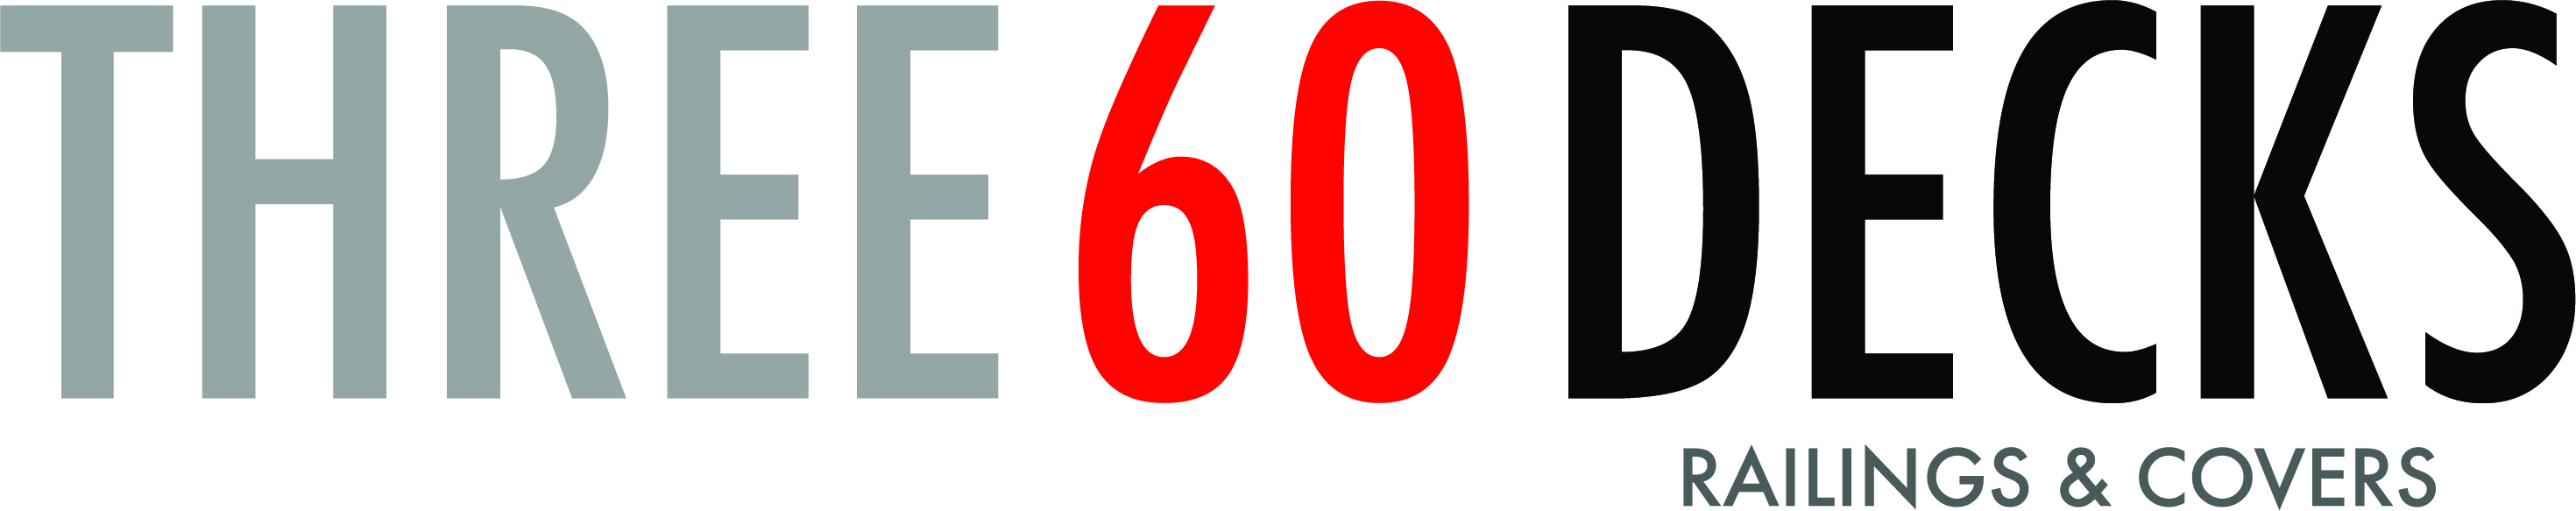 Three 60 Decks, LLC Logo